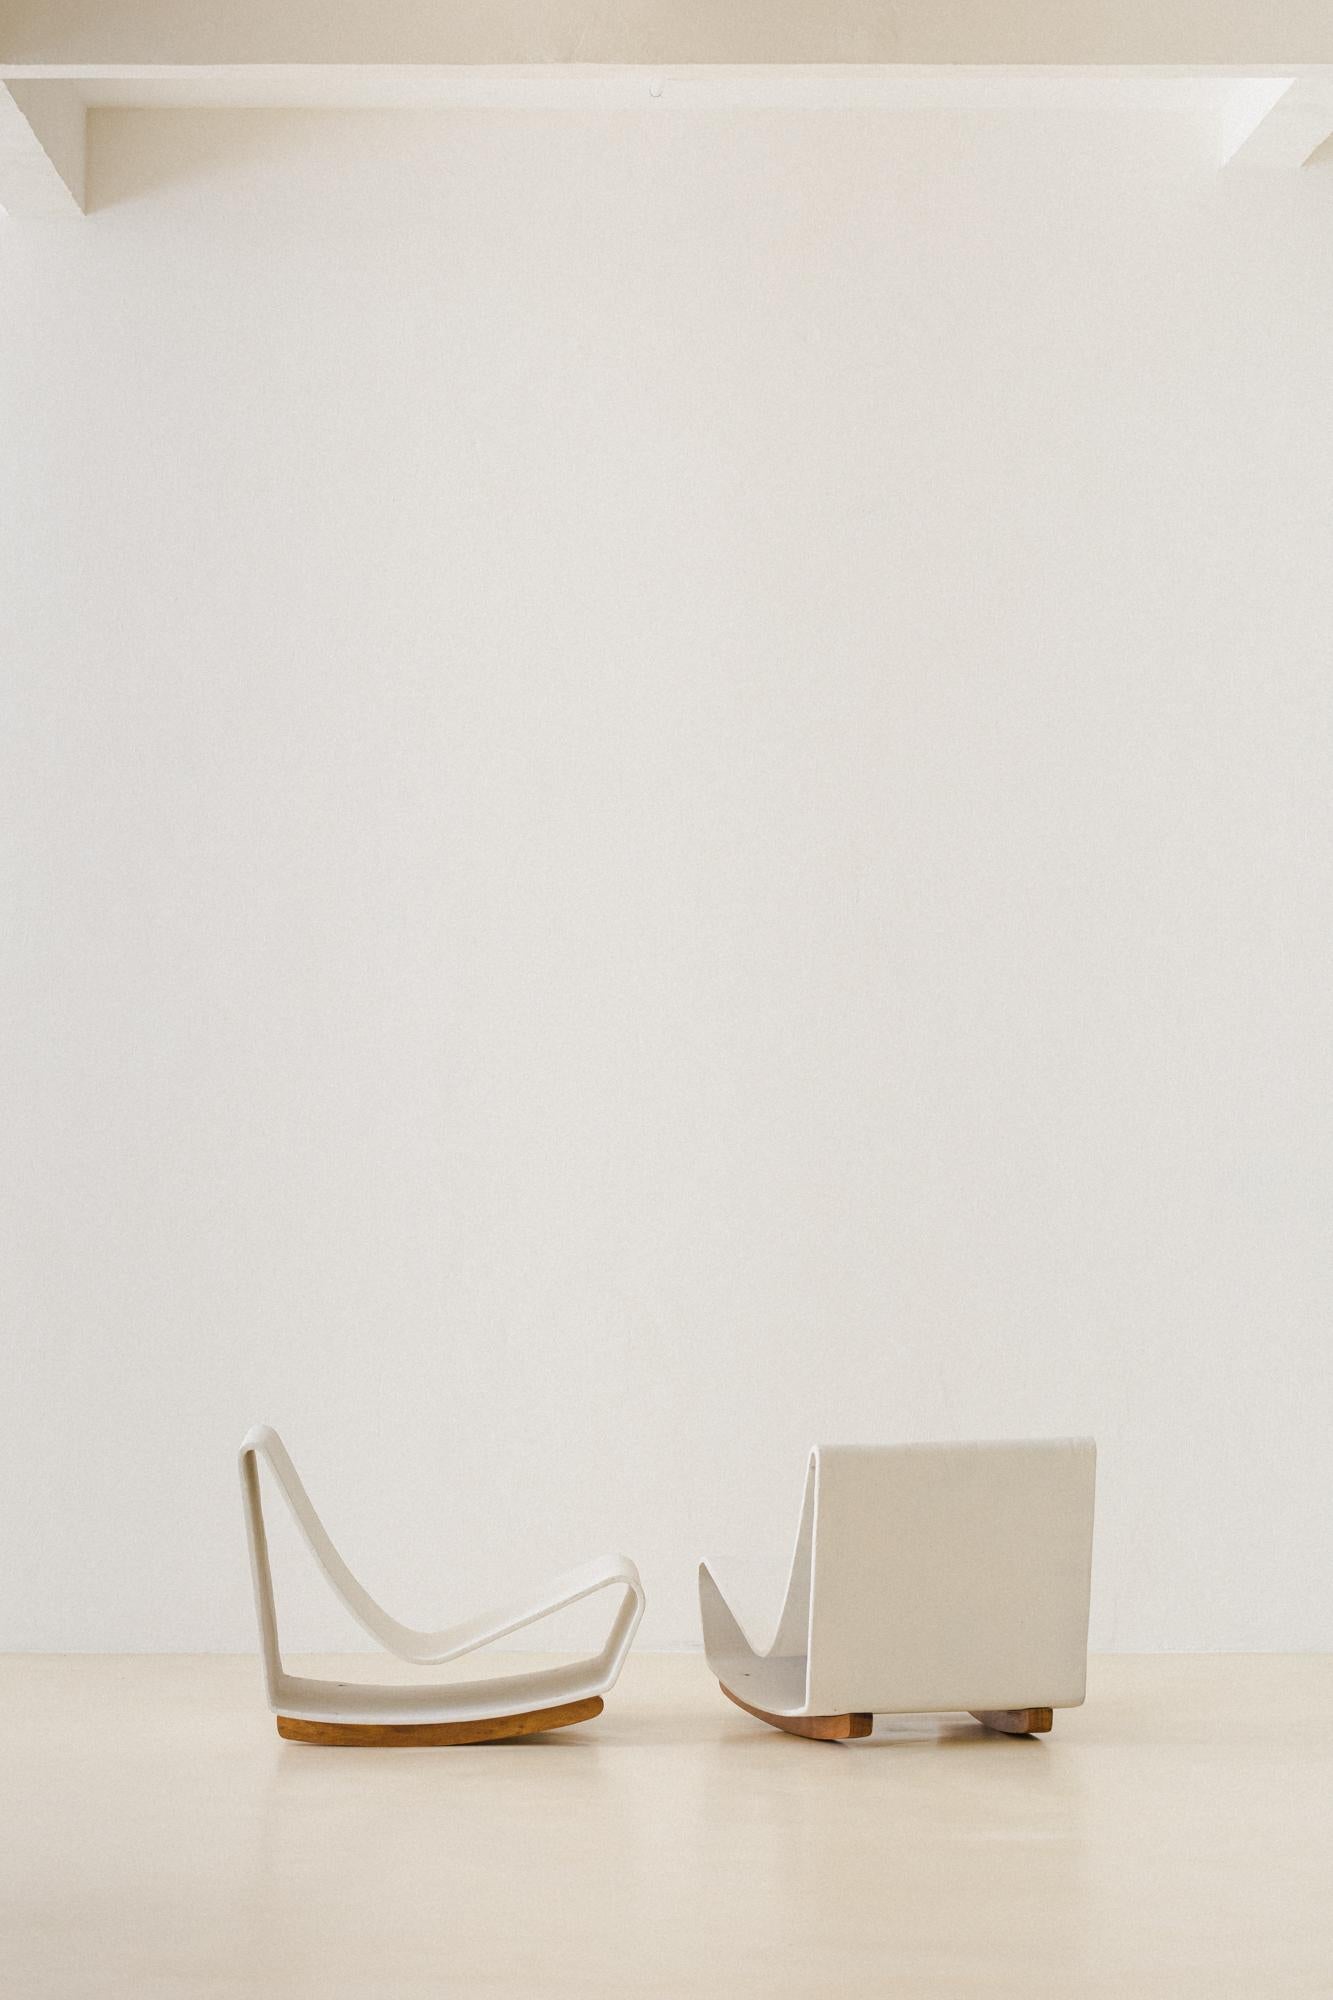 Présentant une forme de boucle attrayante, la chaise Loop a été créée par le designer suisse Willy Guhl (1915-2004) en 1954, avec un volume unique de sièges et de dossiers. Produite par Eternit, cette pièce était à la mode au Brésil dans les années